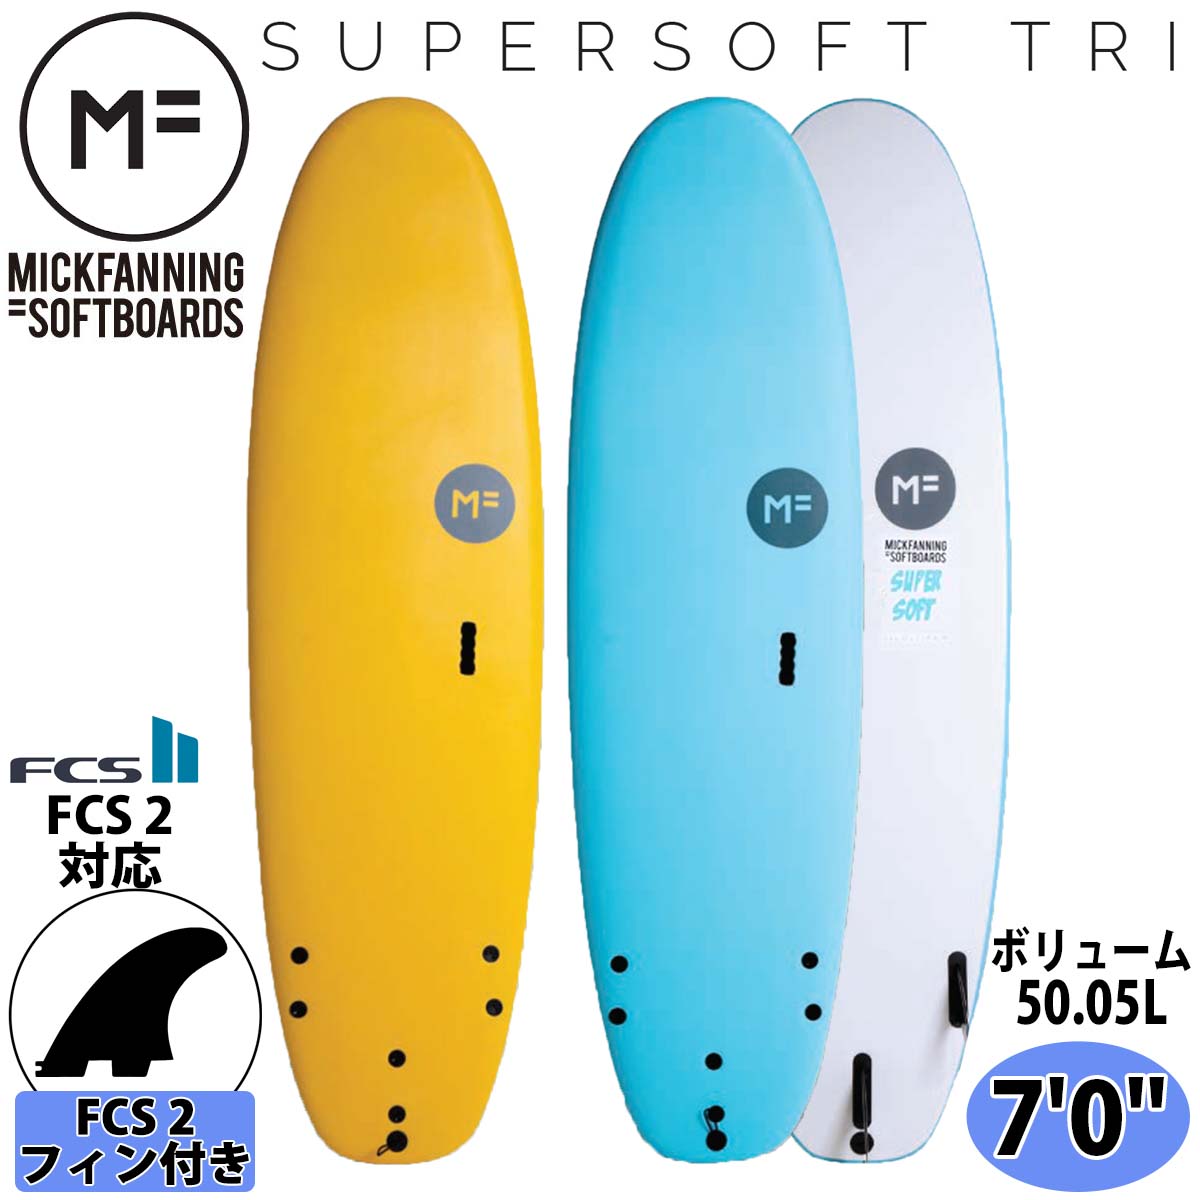 ミックファニング ソフトボード サーフボード SUPER SOFT TRI 7'0 スーパーソフトトライ MICK FANNING SOFTBOARD 2021年モデル 品番 S20-MF-SFO-700/S20-MF-SFI-700 MF soft boards シリーズ 日本正規品